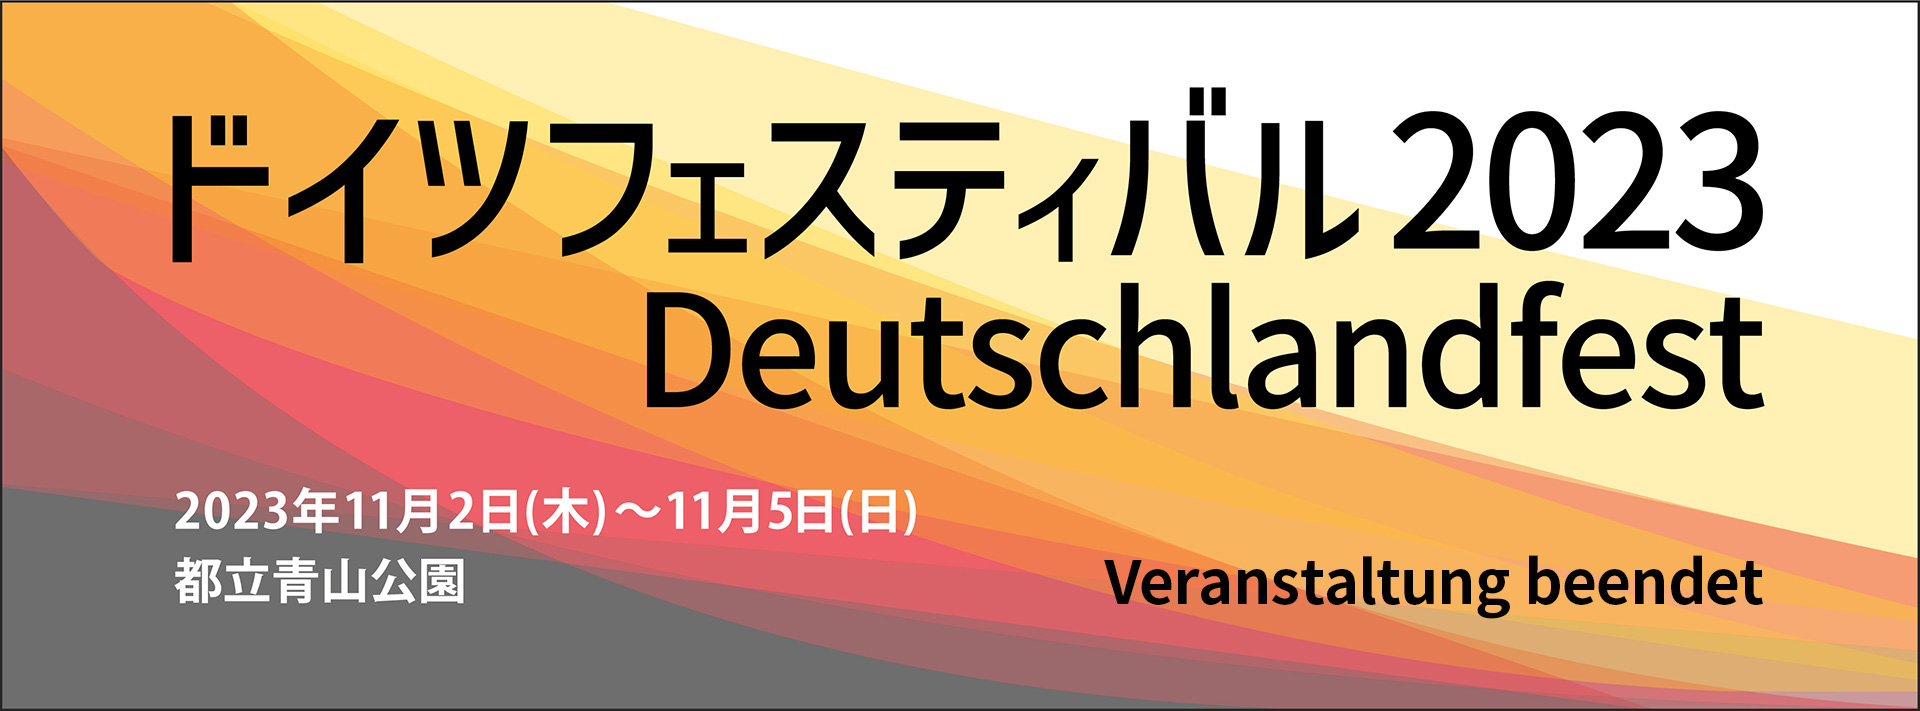 ドイツフェスティバル2023 Deutschlandfest 2023年11月2日（木）〜11月5日（日）都立青山公園 Veranstaltung beendet